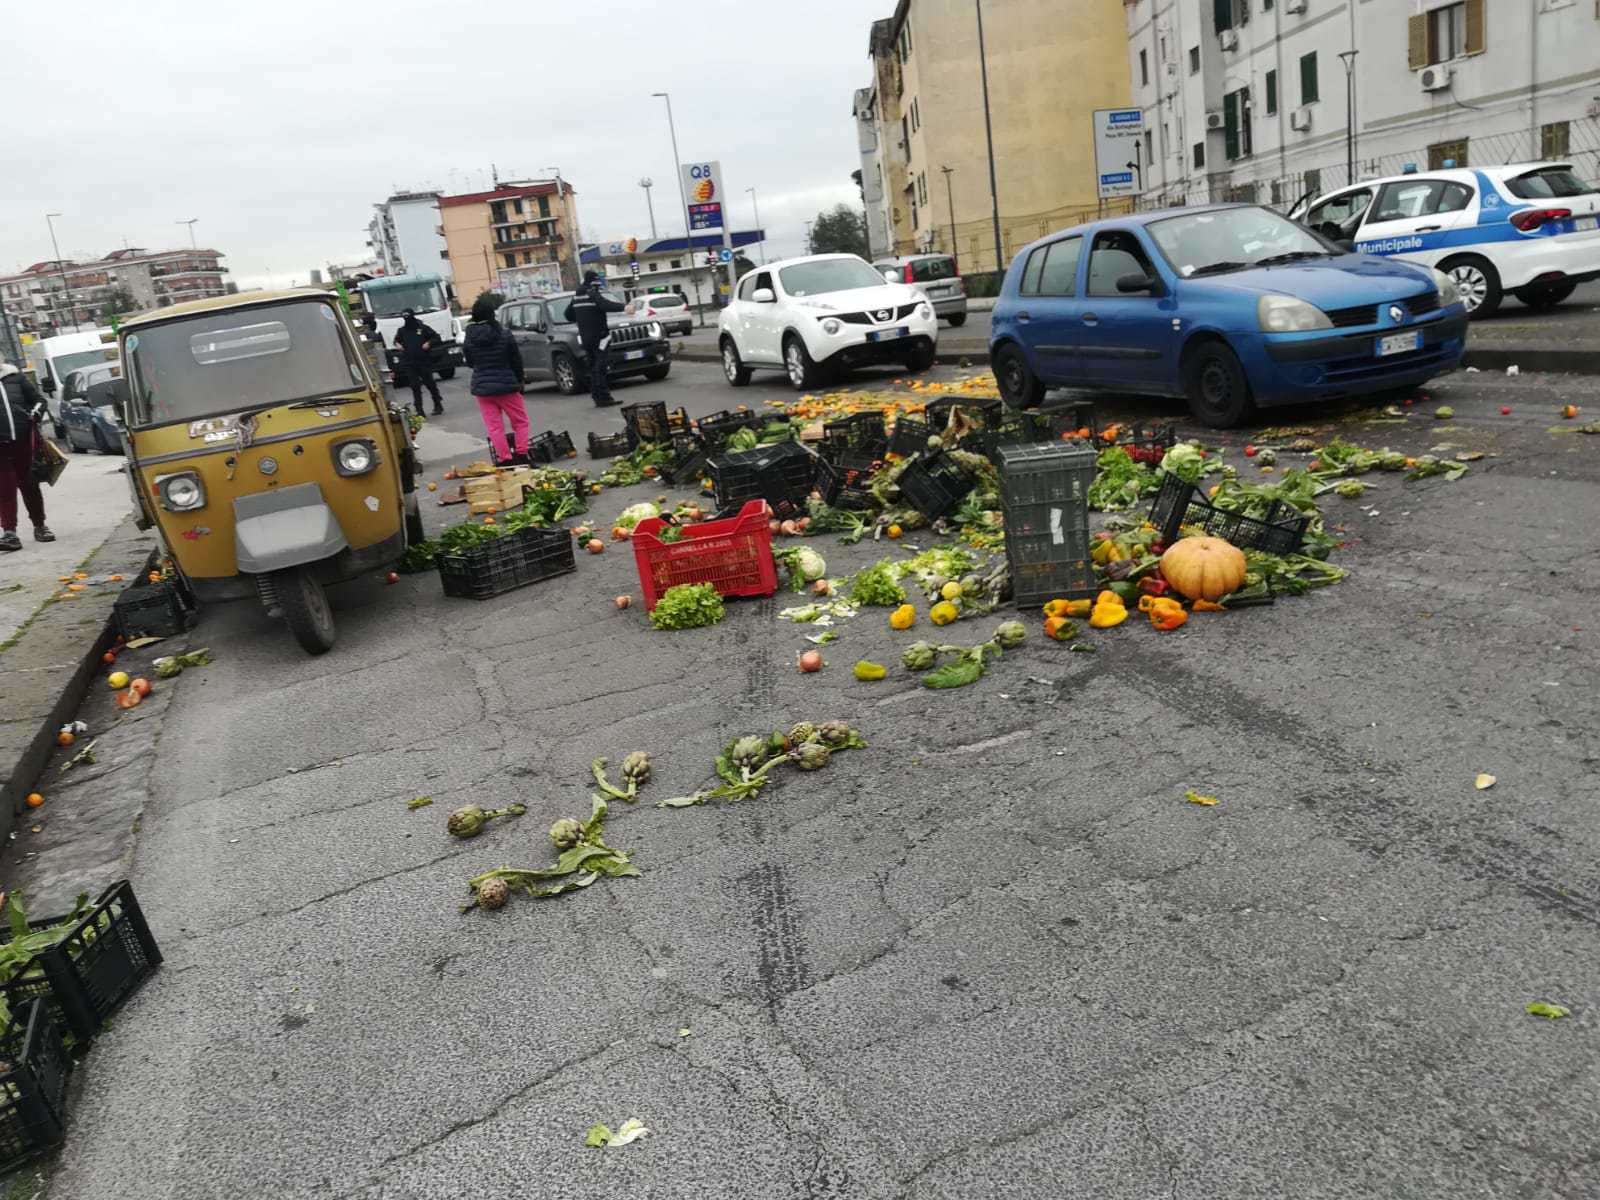 Napoli, venditori abusivi  aggrediscono i vigili. Denunciati, il loro veicolo risulta rubato